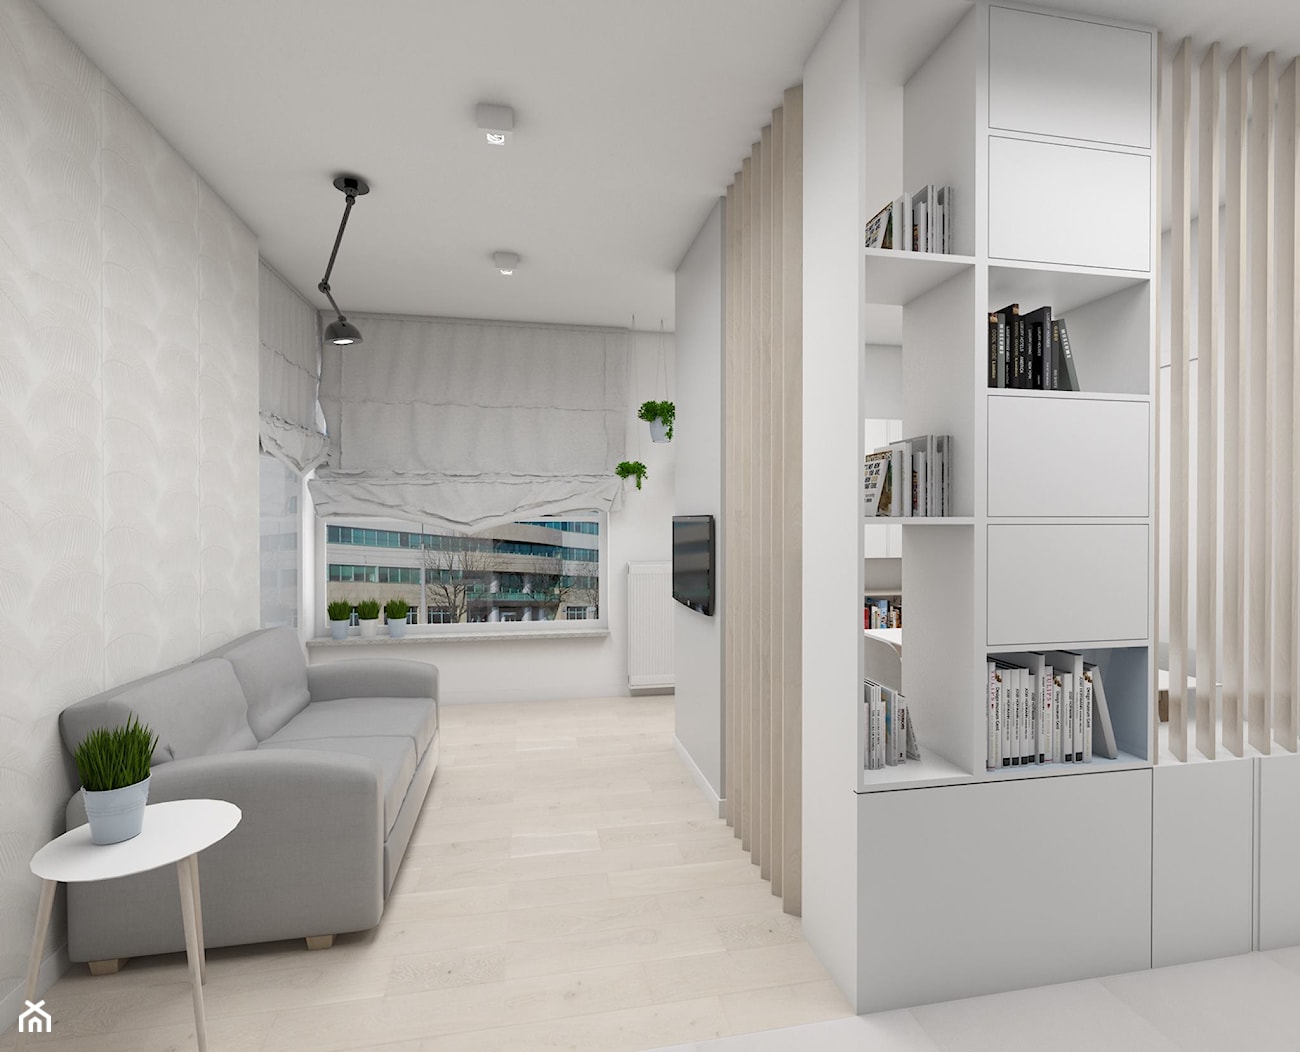 Apartament/kancelaria prawnicza 43m2 - Średni biały hol / przedpokój, styl minimalistyczny - zdjęcie od Dizajnia art - studio projektowe - Homebook